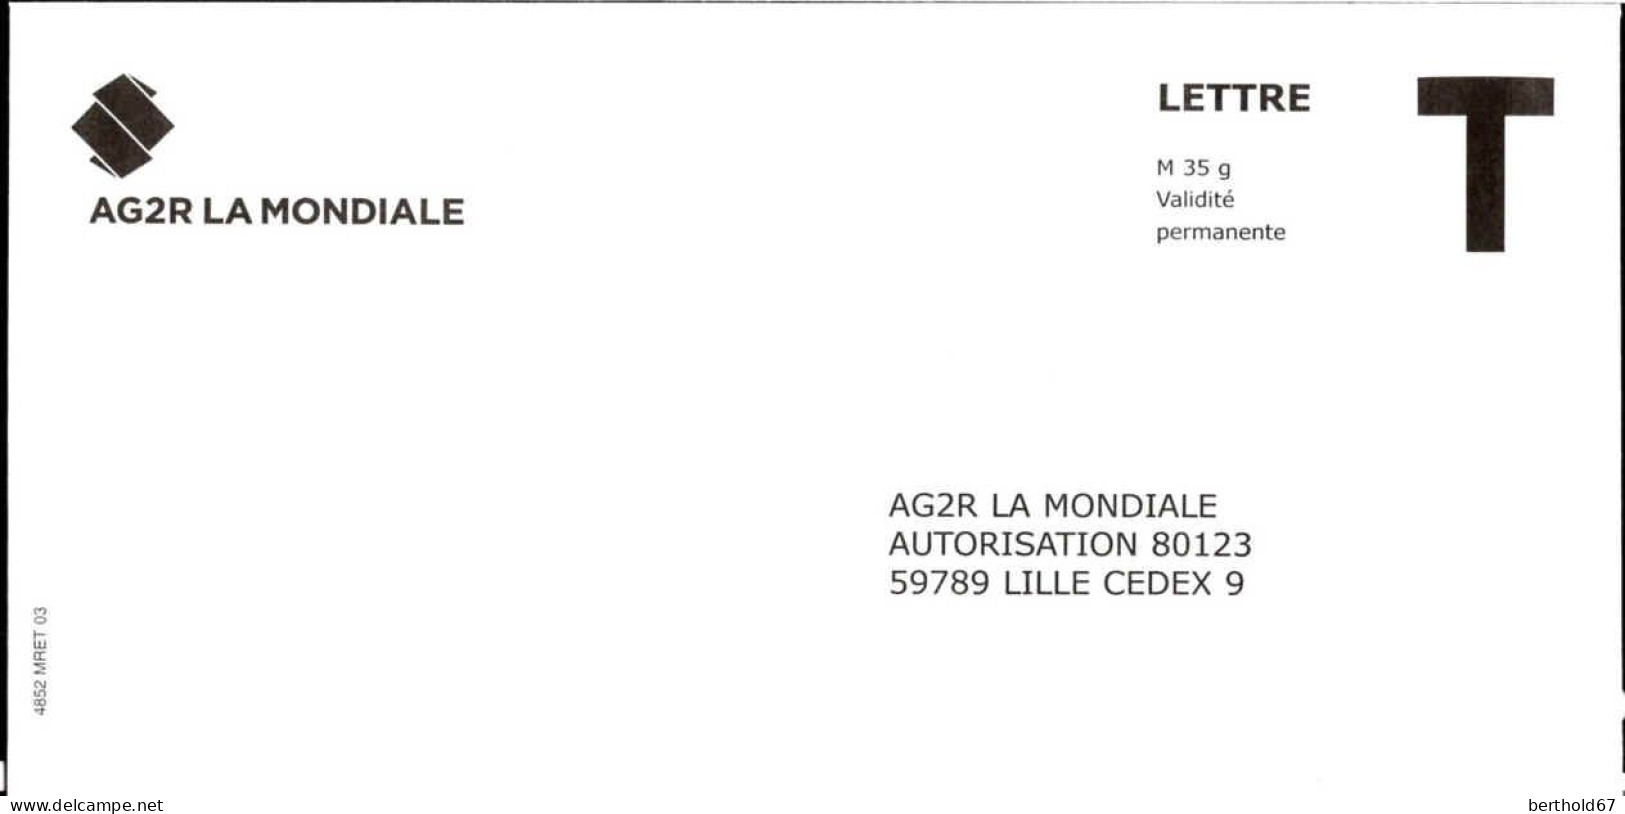 France Entier-P N** (7014) AG2R La Mondiale Autorisation 80123 Lettre M35g V.permanente - Karten/Antwortumschläge T